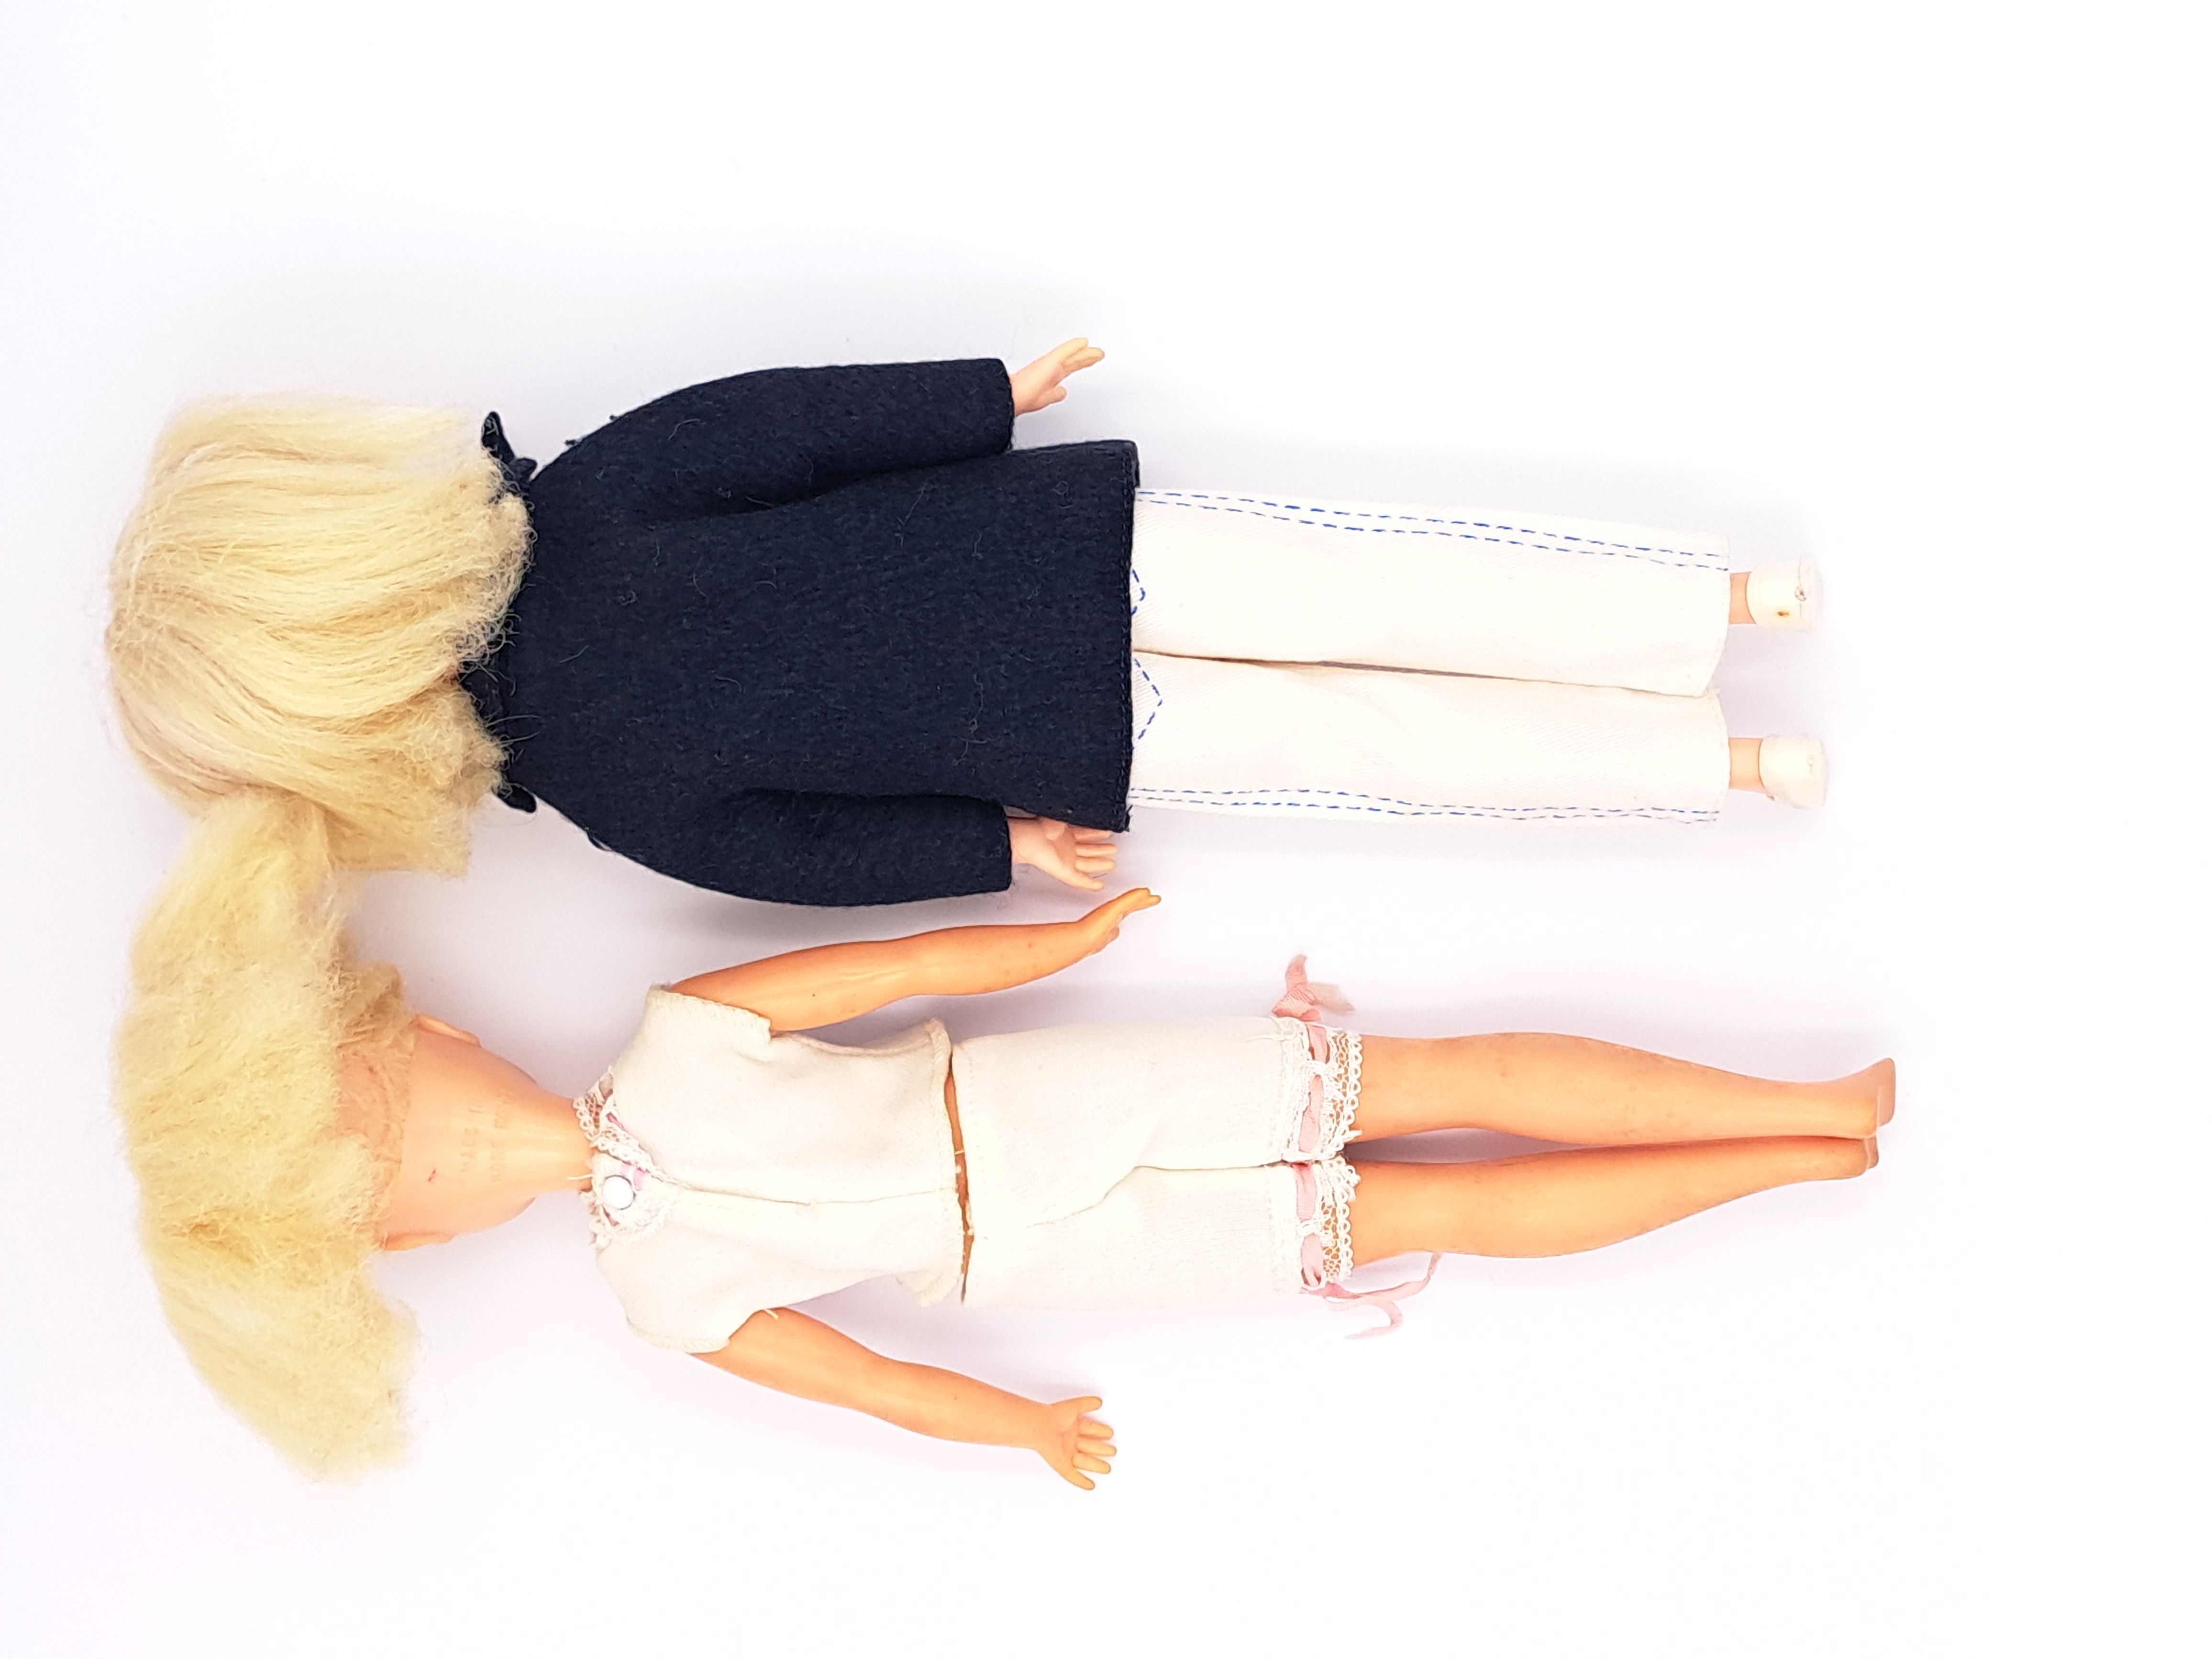 Pedigree Sindy pair of vintage side part hair dolls, 1969, blonde - Image 2 of 4